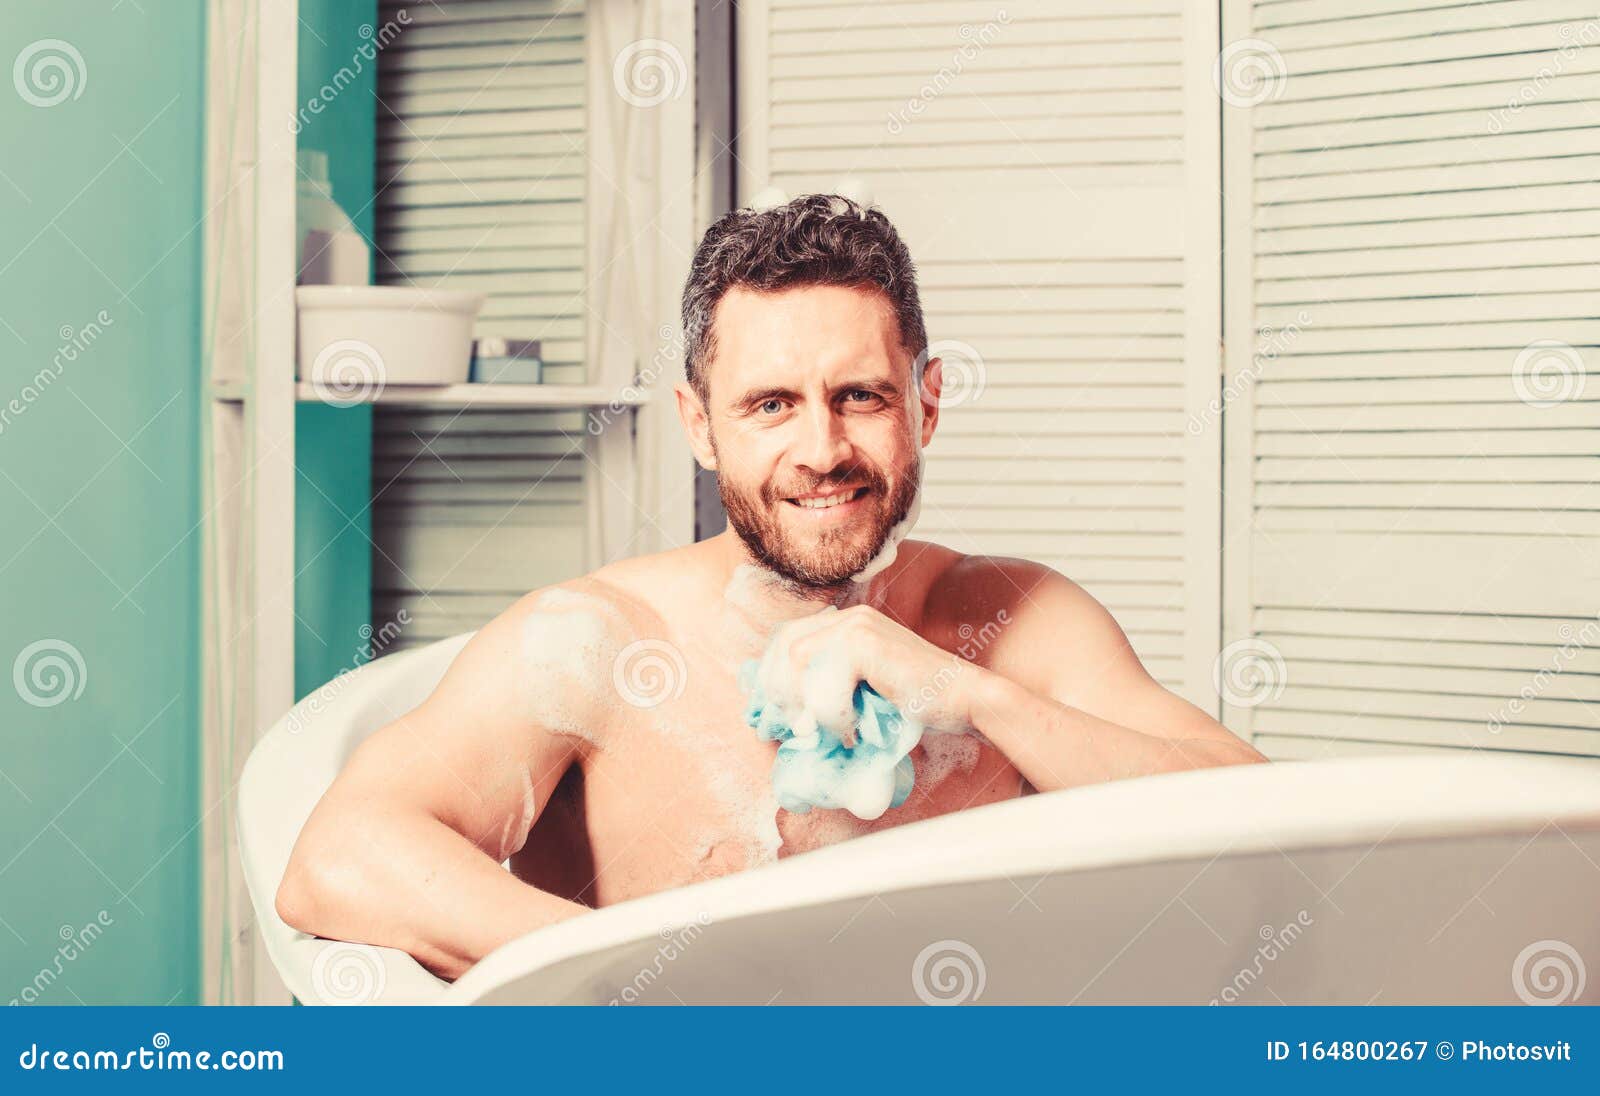 舒缓和美容 男帅帅帅哥在洗澡时放松 Spa健康概念 用肥皂洗澡 库存图片 - 图片 包括有 é«˜åº¦, å®¤: 175372321